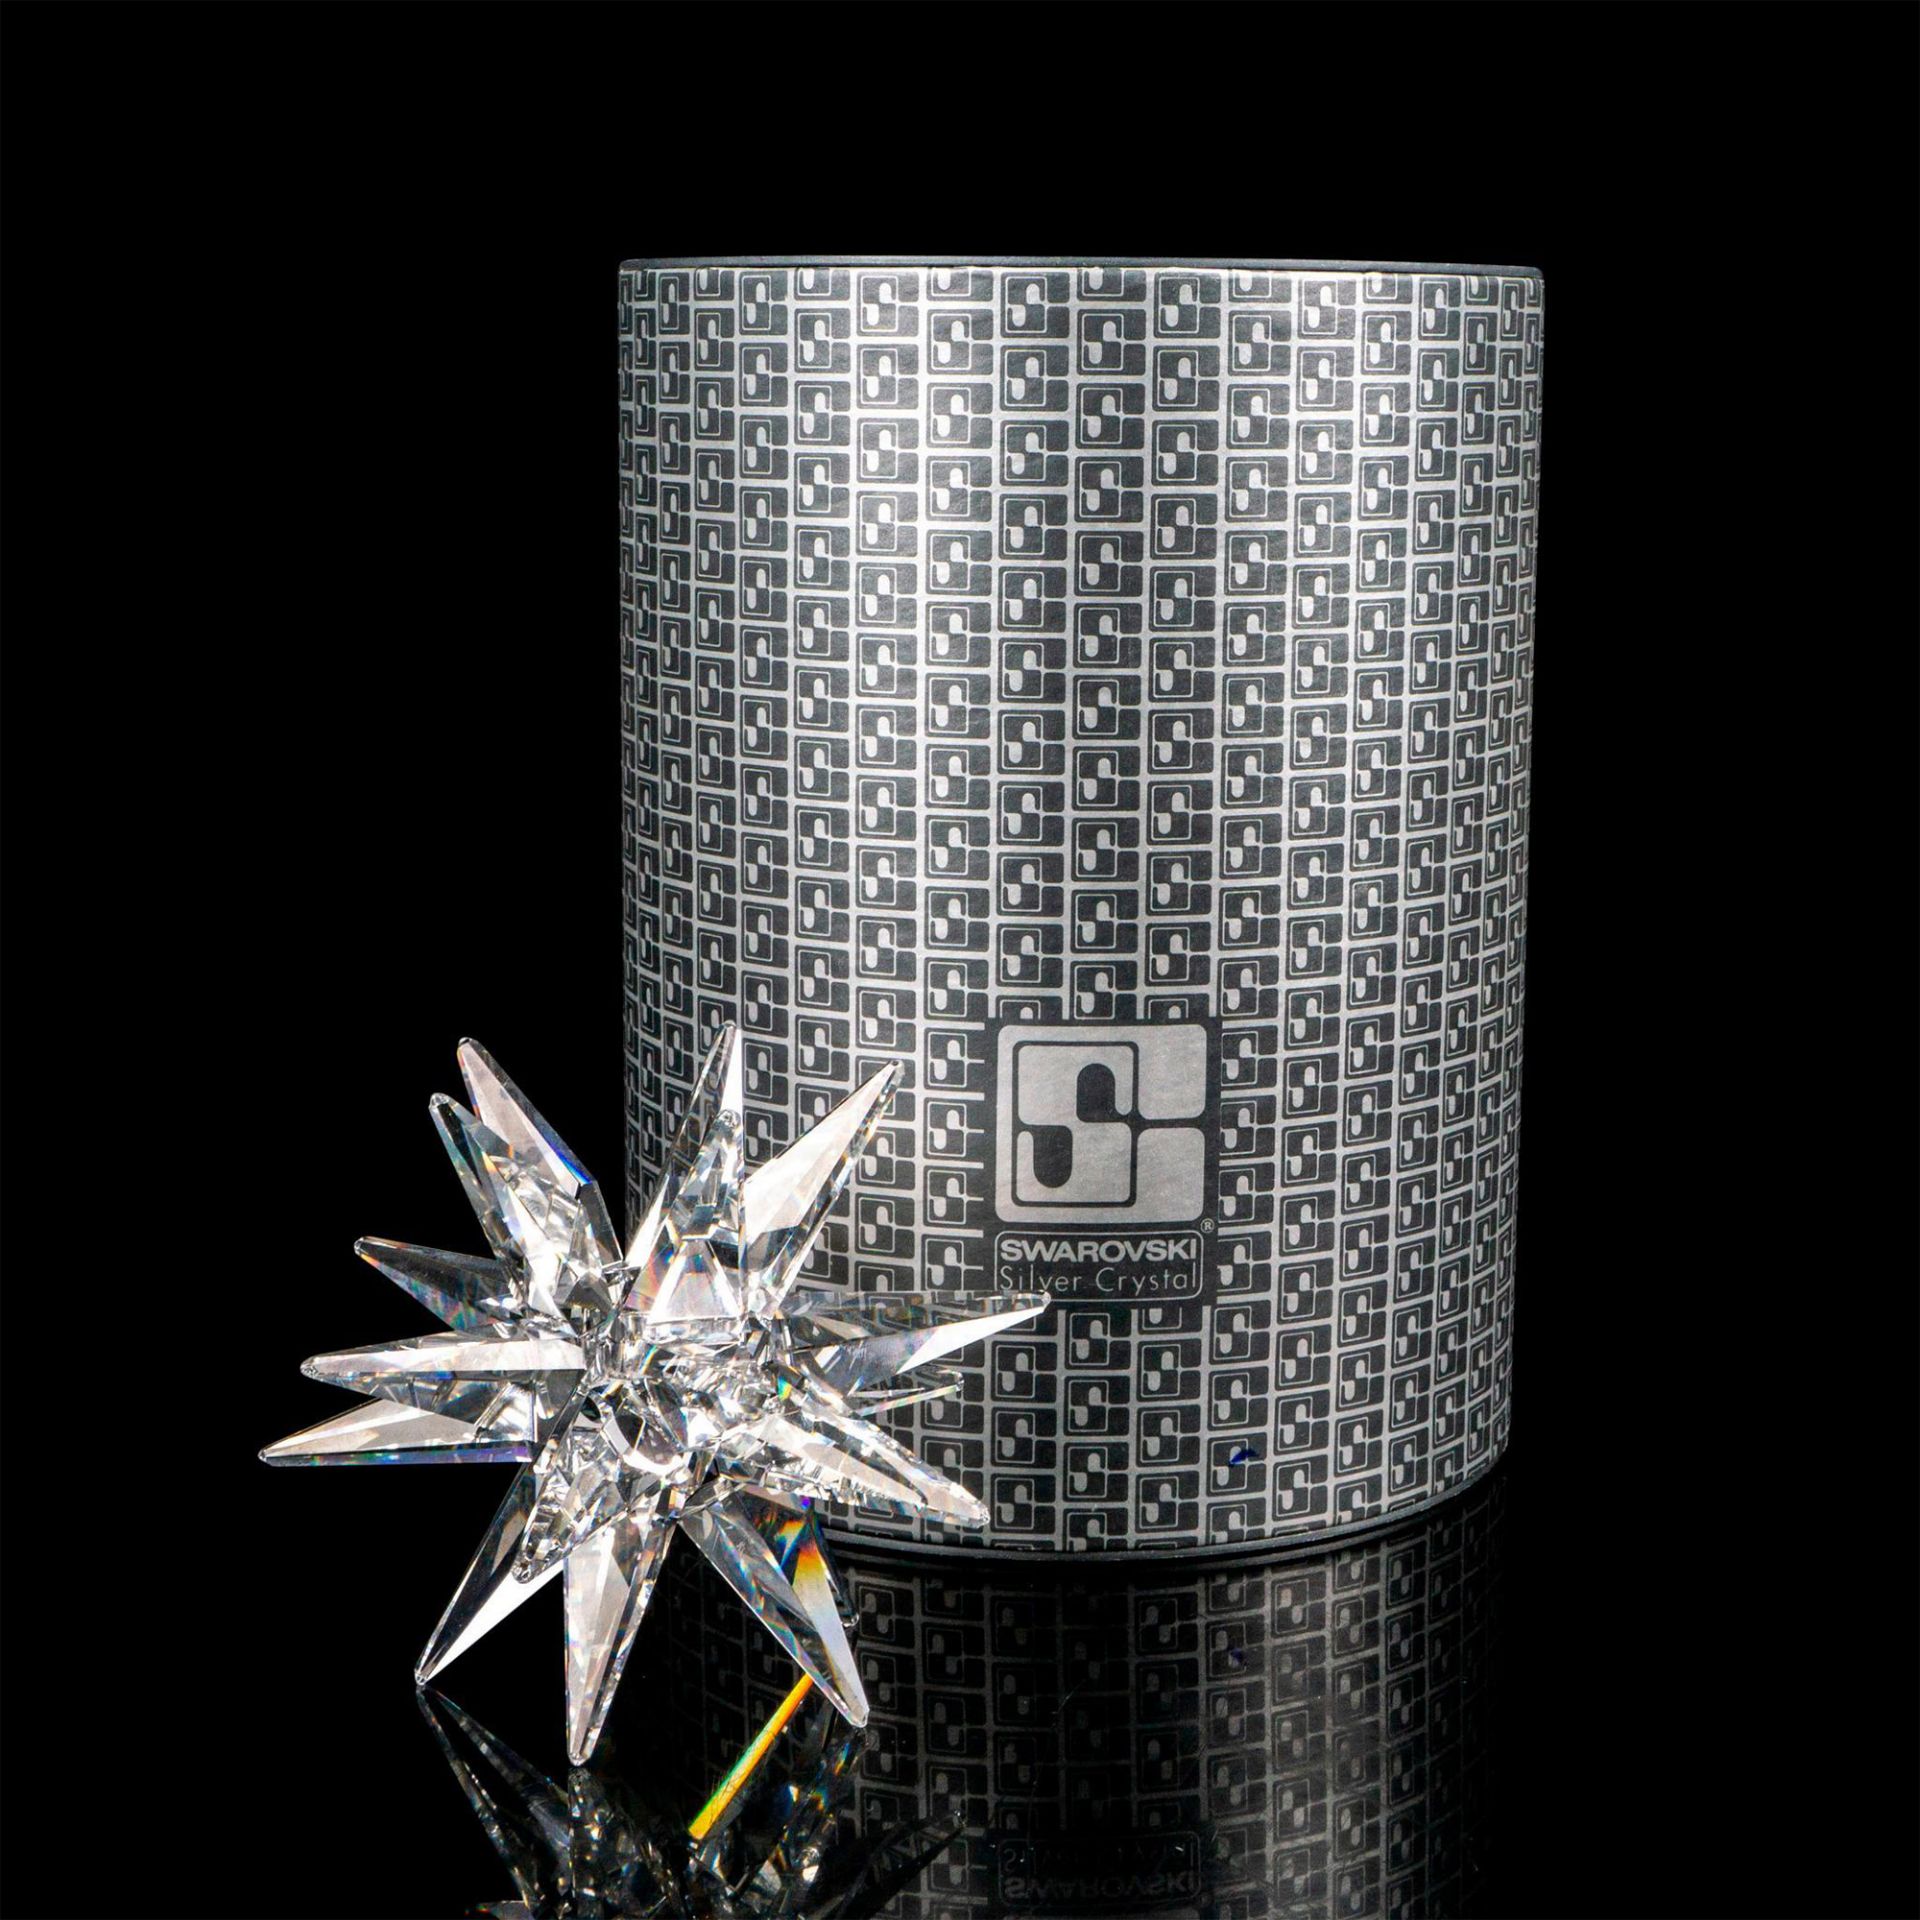 Swarovski Silver Crystal Candleholder, Star - Image 4 of 4